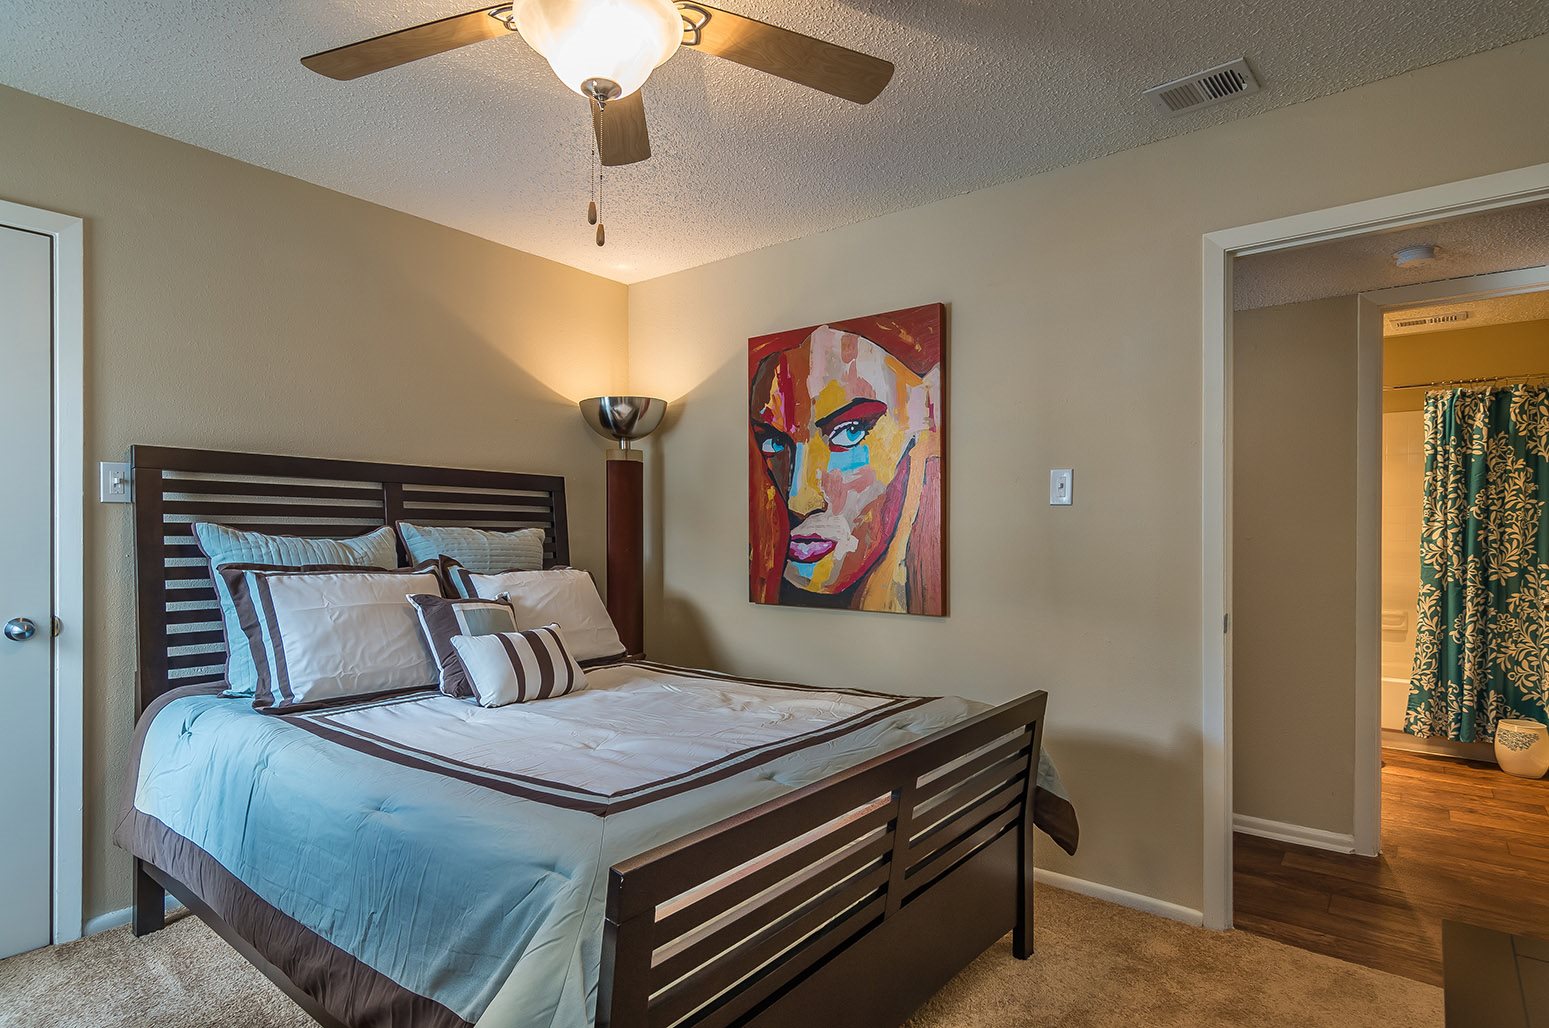 1 Bedroom Apartments San Antonio Tx Apartment Design Ideas